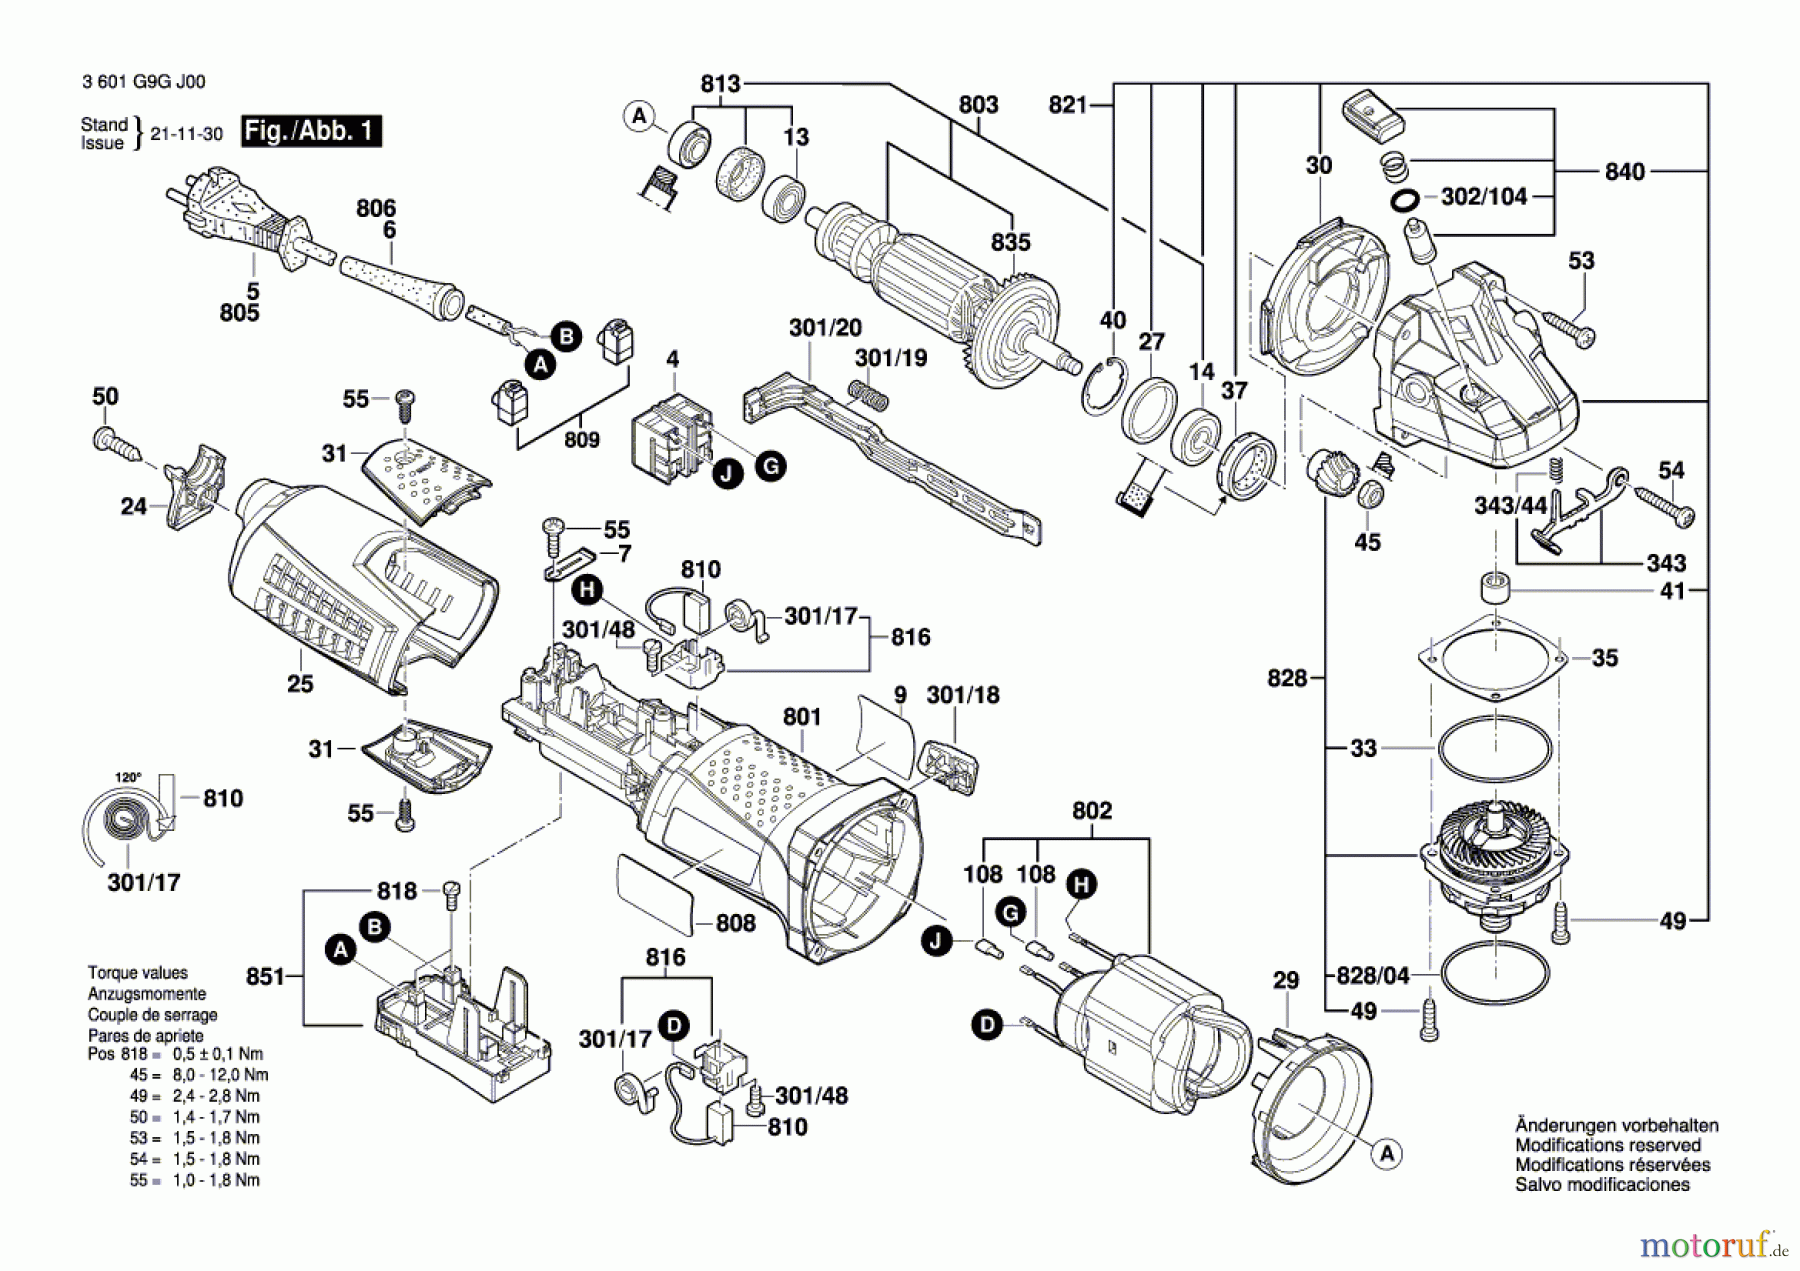  Bosch Werkzeug Winkelschleifer CG 17-150 Seite 1